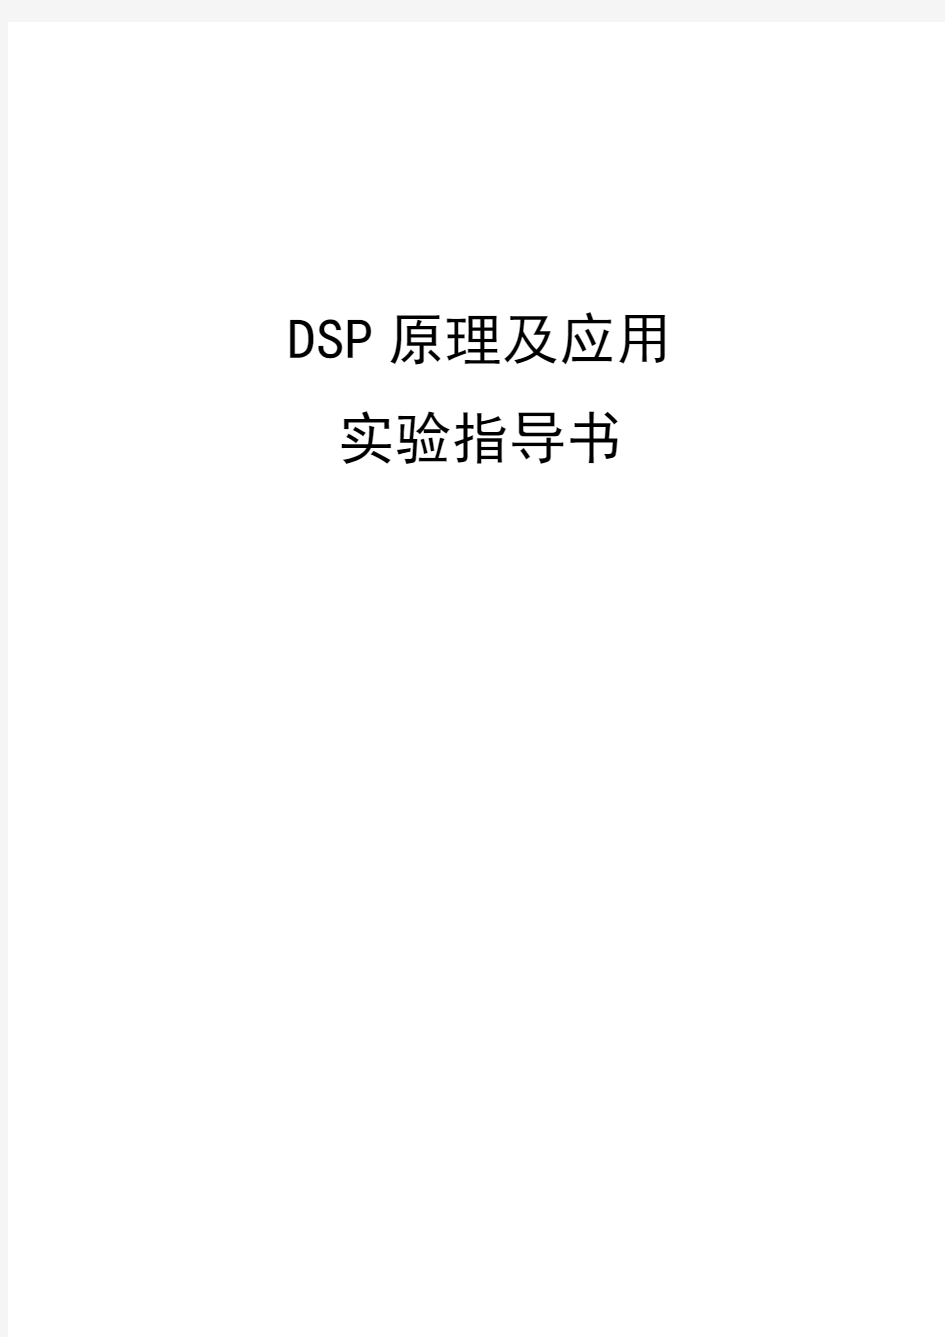 DSP原理及应用实验指导书